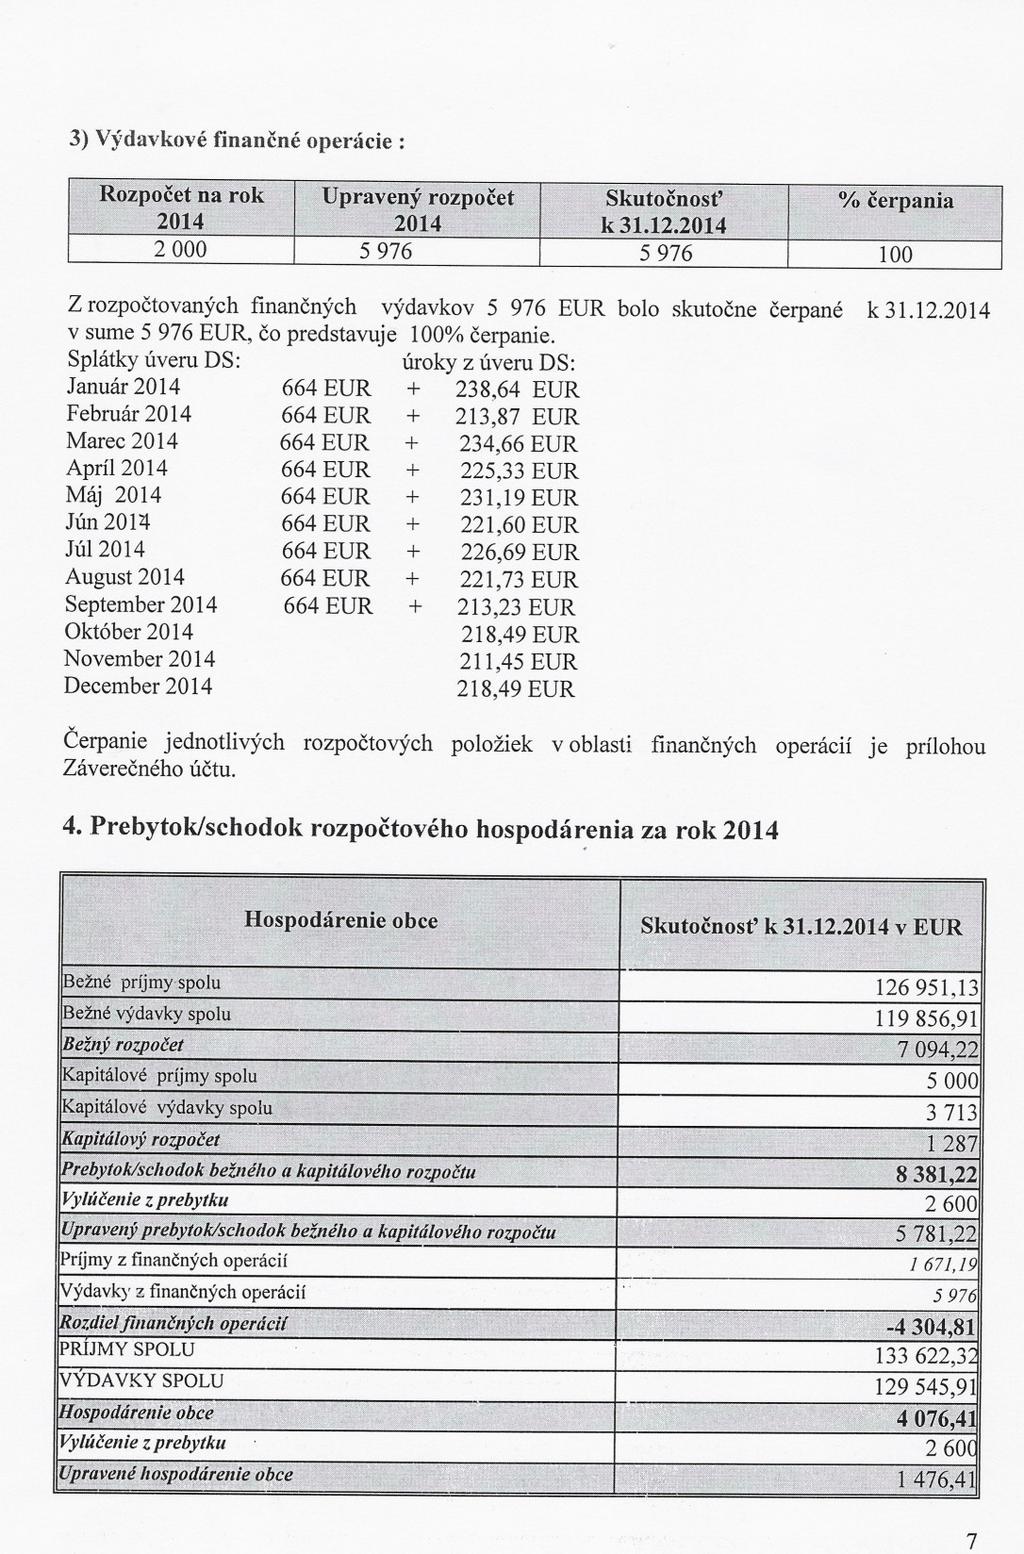 3) Výdavkové financné operácie: "' R,ozpocefna rok Upravený rozpocet Skutocnost'"" % cerpania 2014 2014 k 31.12.